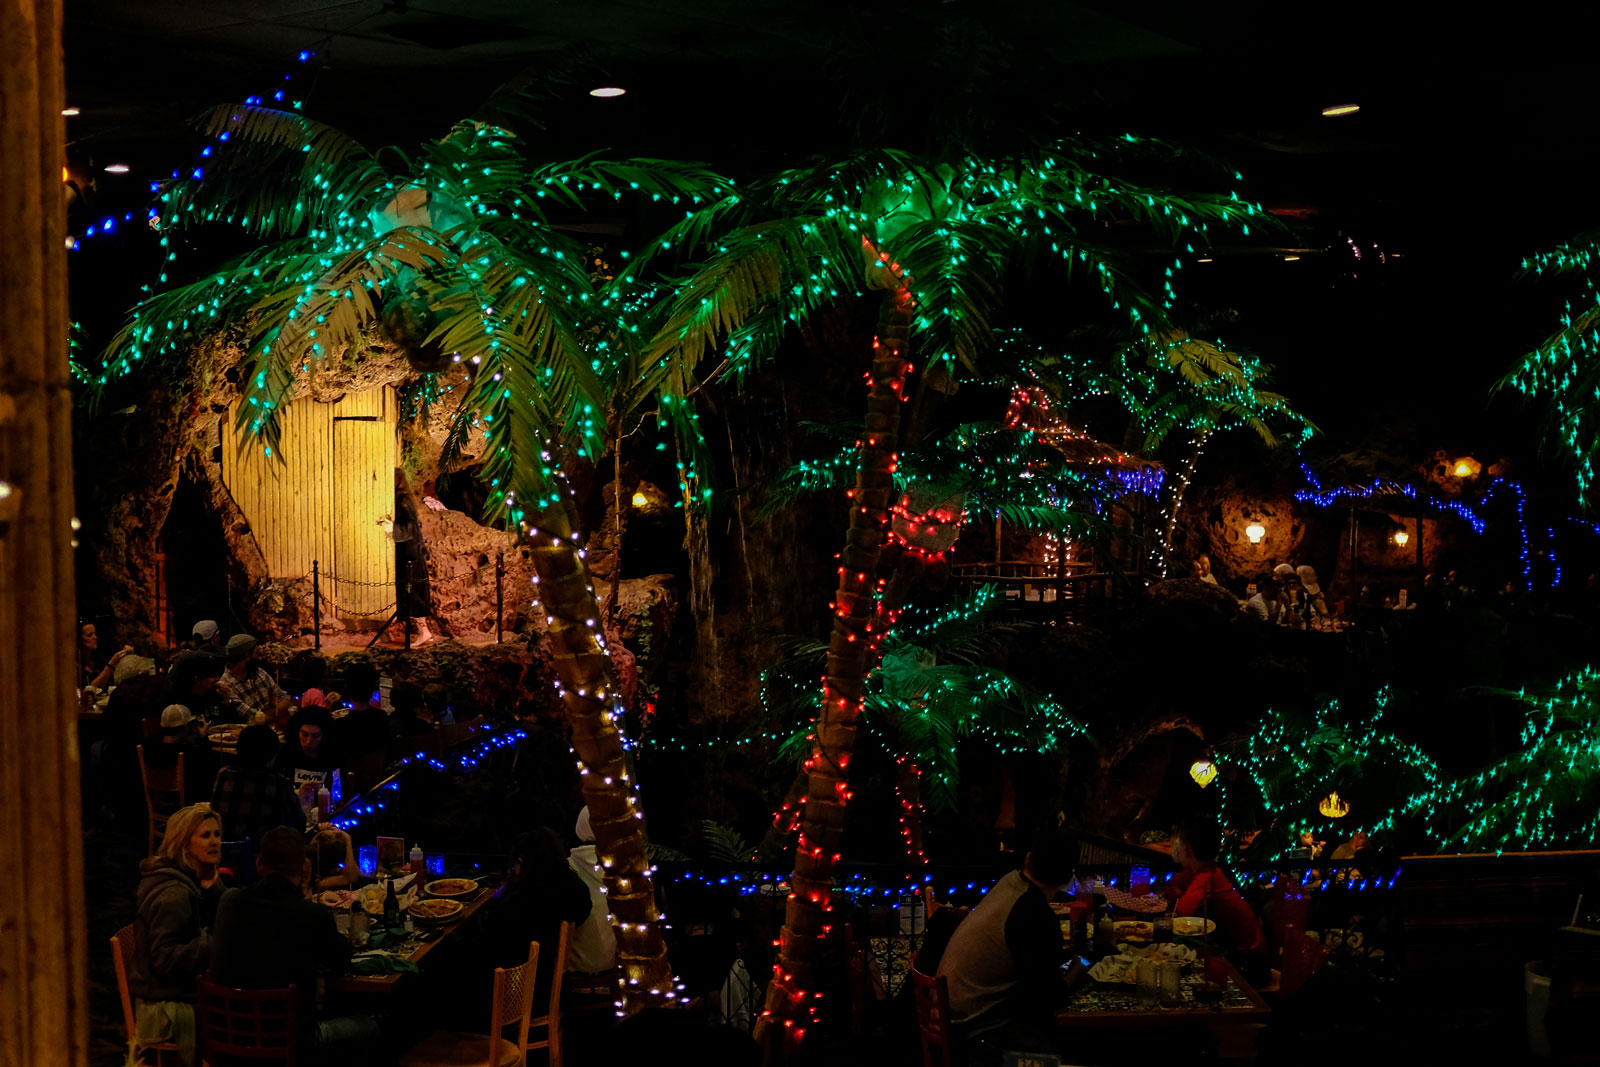 Casa Bonita Interior with lots of kitschy lights